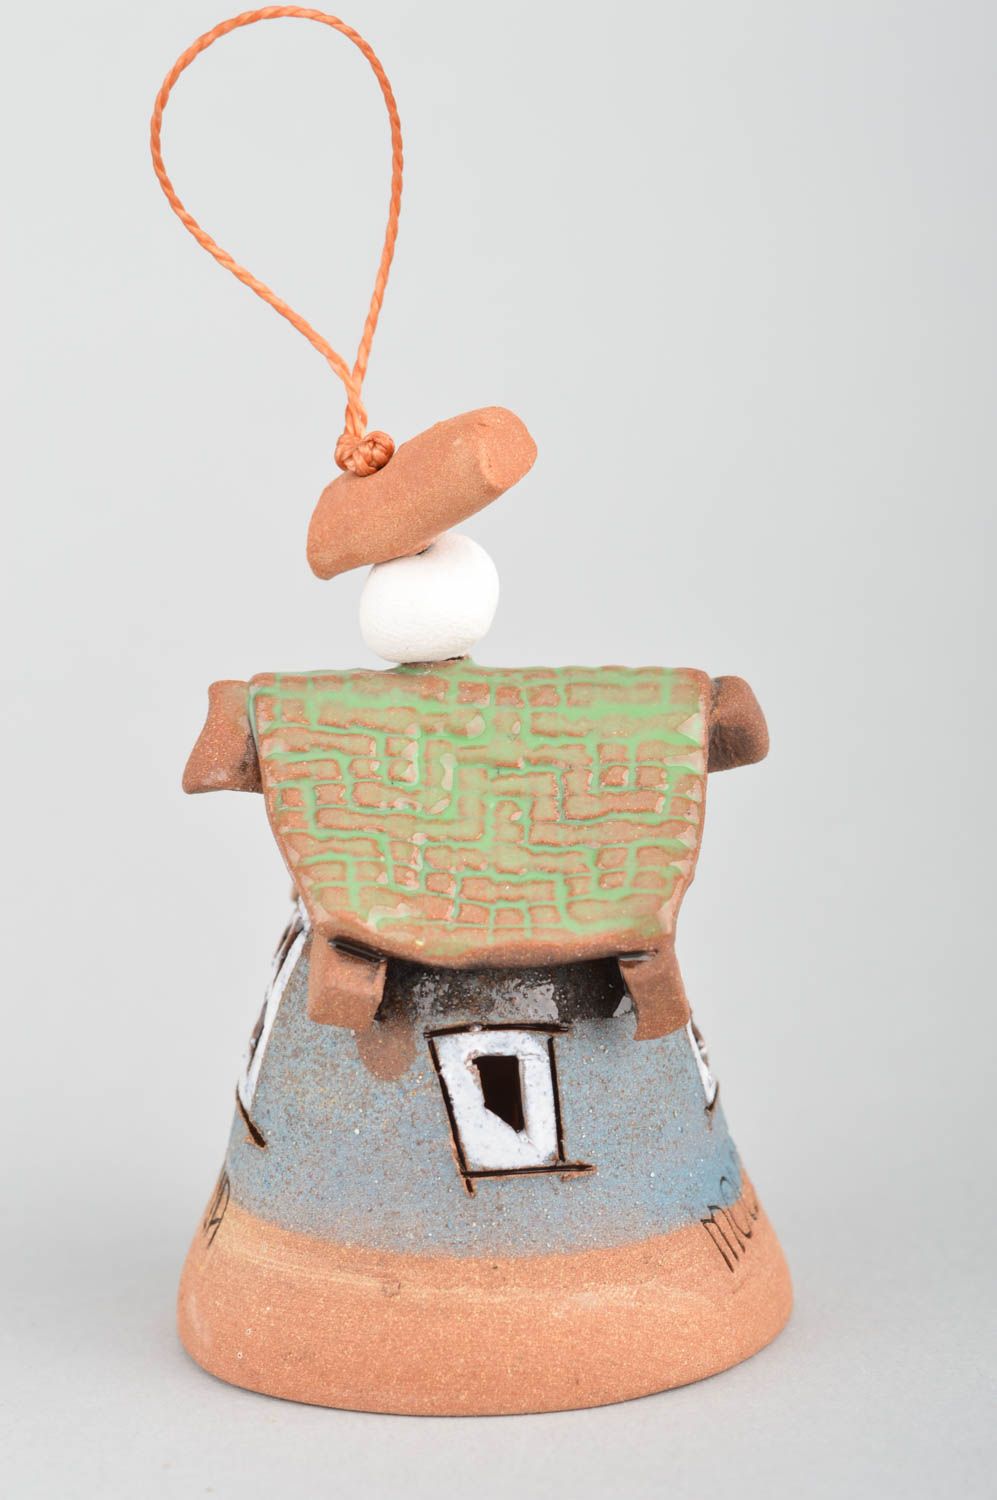 Глиняный колокольчик расписанный глазурью ручной работы в виде красивого домика  фото 5